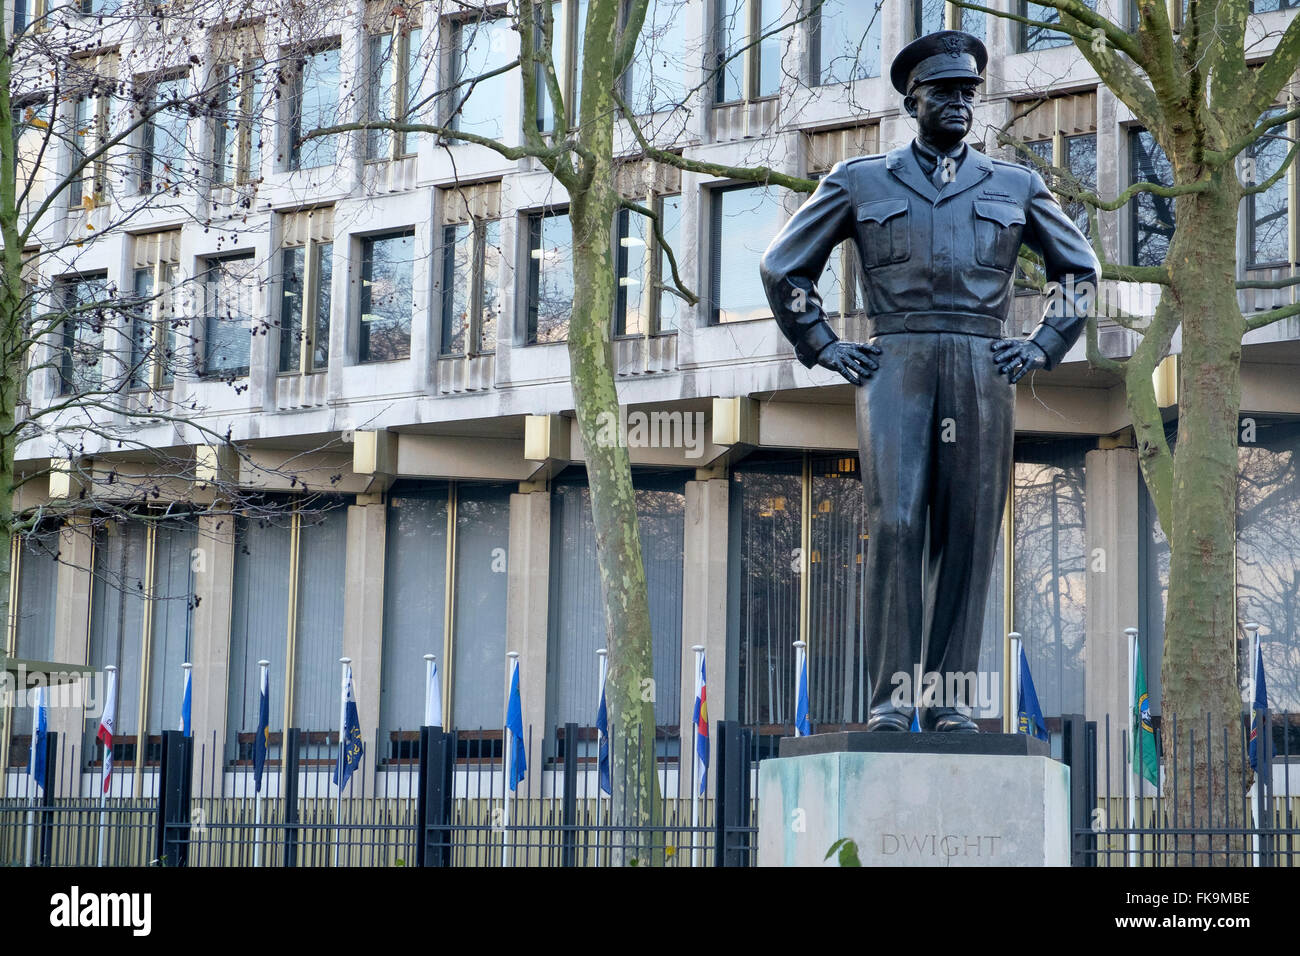 London, Regno Unito - 24 Febbraio 2016: Statua del Dwight D. Eisenhower al di fuori dell'Ambasciata americana in Grosvenor Square, Mayfair, Londra Foto Stock